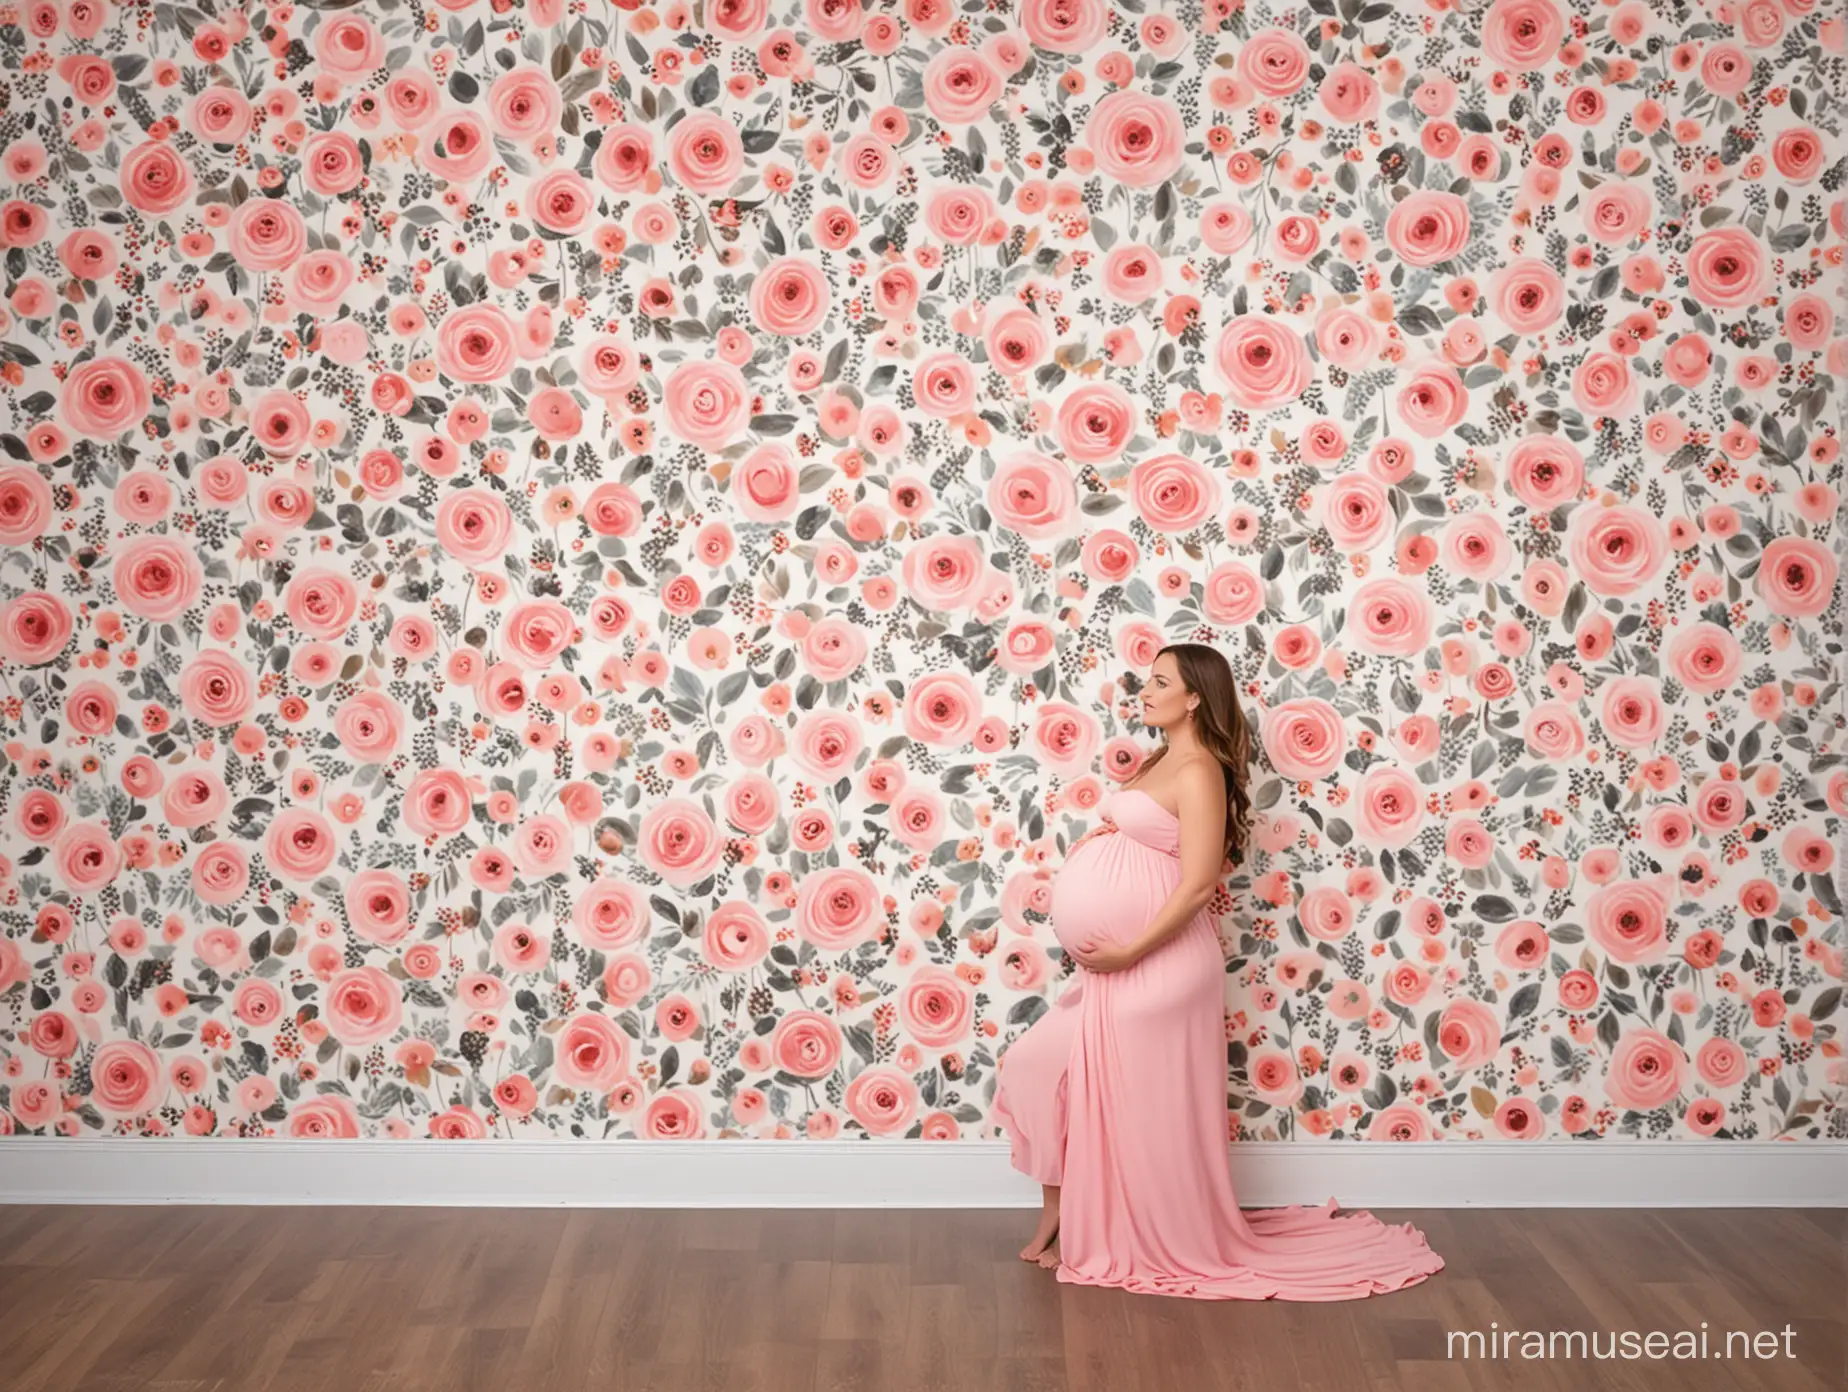 Elegant Maternity Photoshoot Backdrop with Soft Pastel Tones